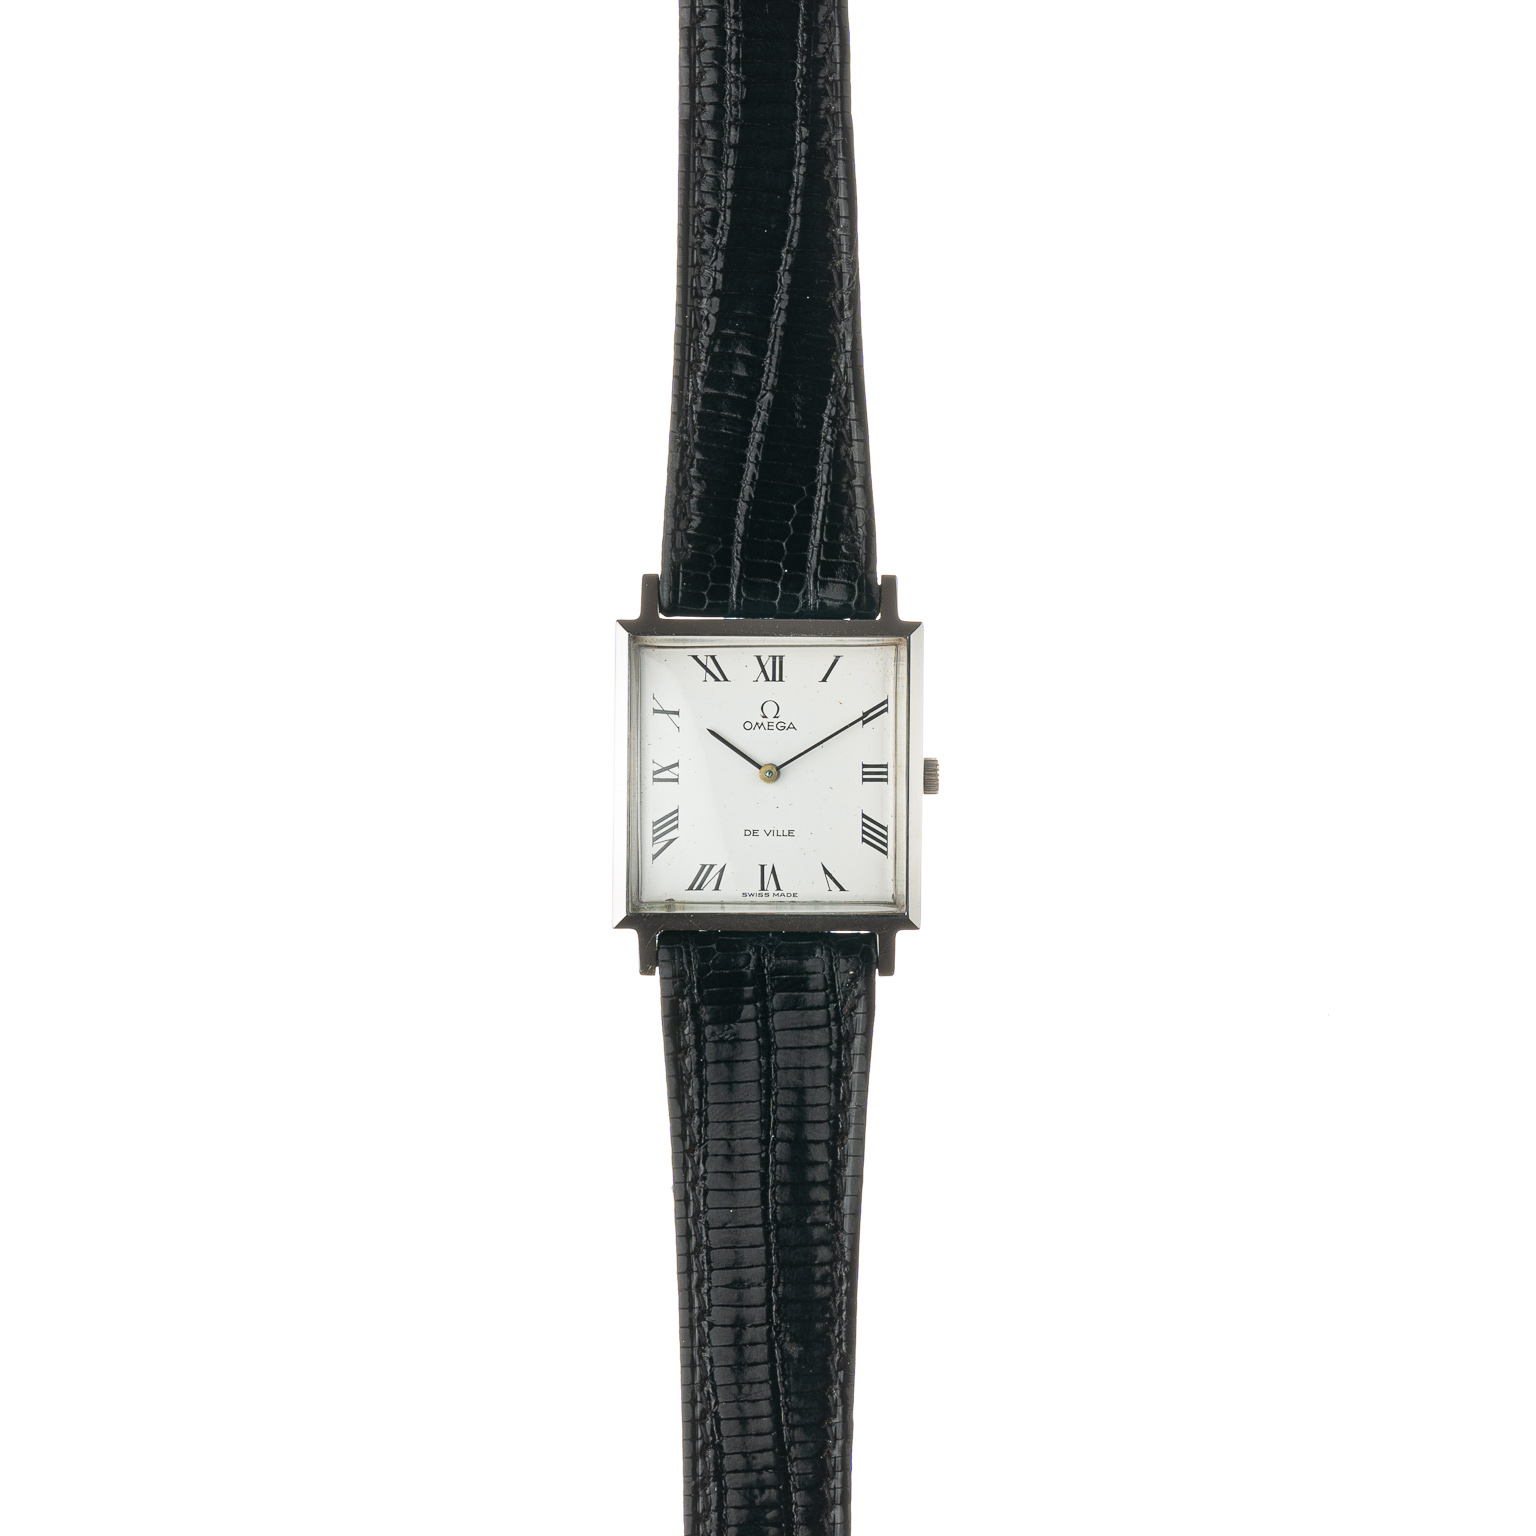 Vintage Omega De Ville 551.022 from 1966 watch